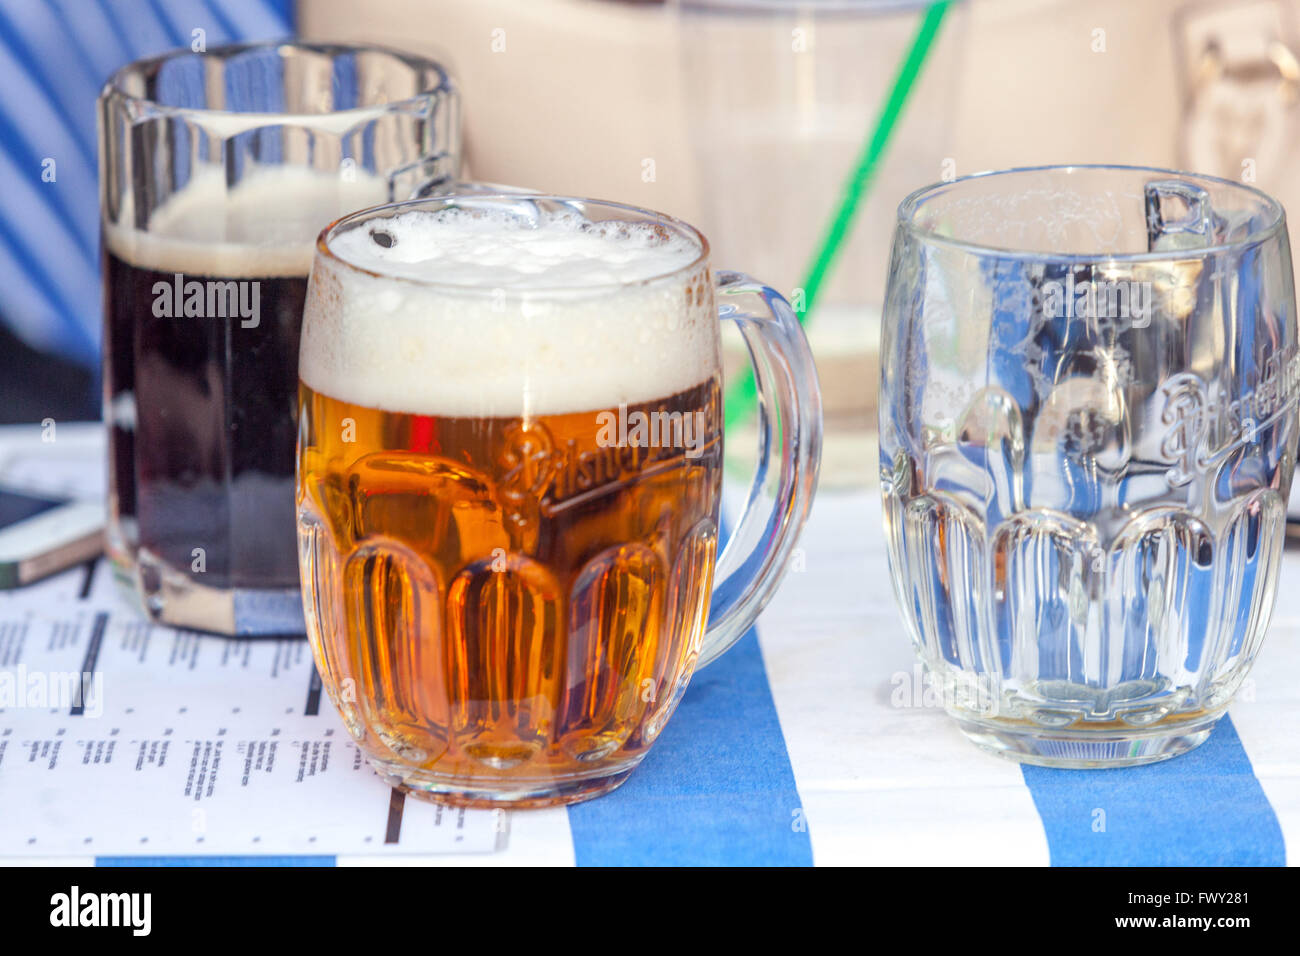 Bicchiere di birra ceca Pilsner Urquell in bicchieri originali su una scrivania, Prague bar, Repubblica Ceca Foto Stock